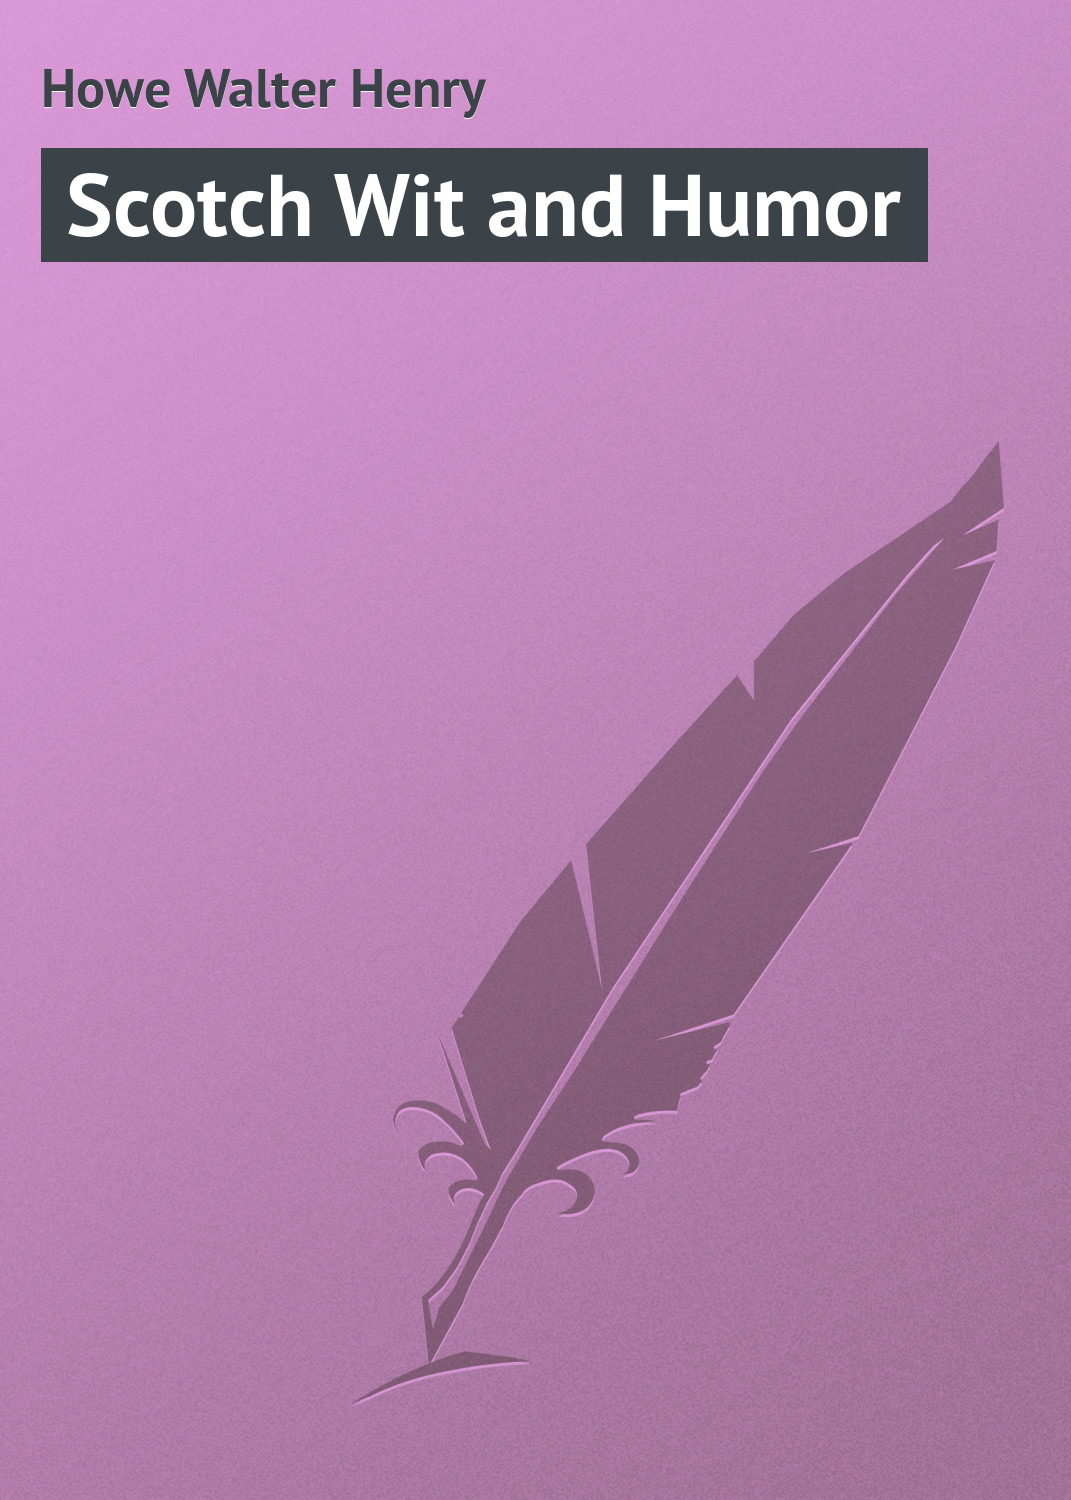 Книга Scotch Wit and Humor из серии , созданная Walter Howe, может относится к жанру Зарубежная классика, Зарубежный юмор. Стоимость электронной книги Scotch Wit and Humor с идентификатором 23154491 составляет 0 руб.